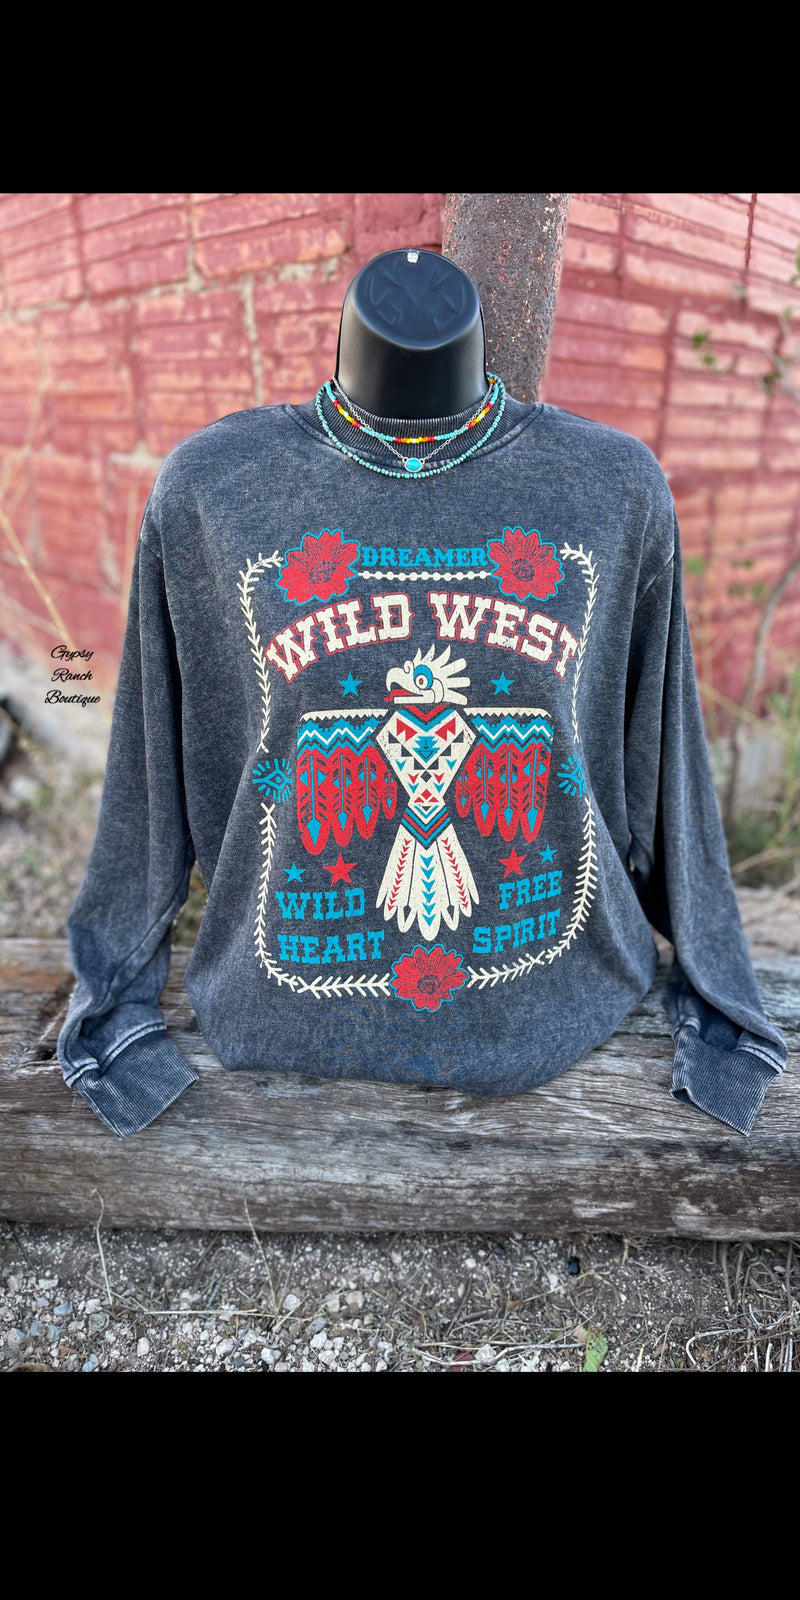 Dreamer Wild Heart Free Spirit Sweatshirt on Pullover - Also in Plus Size